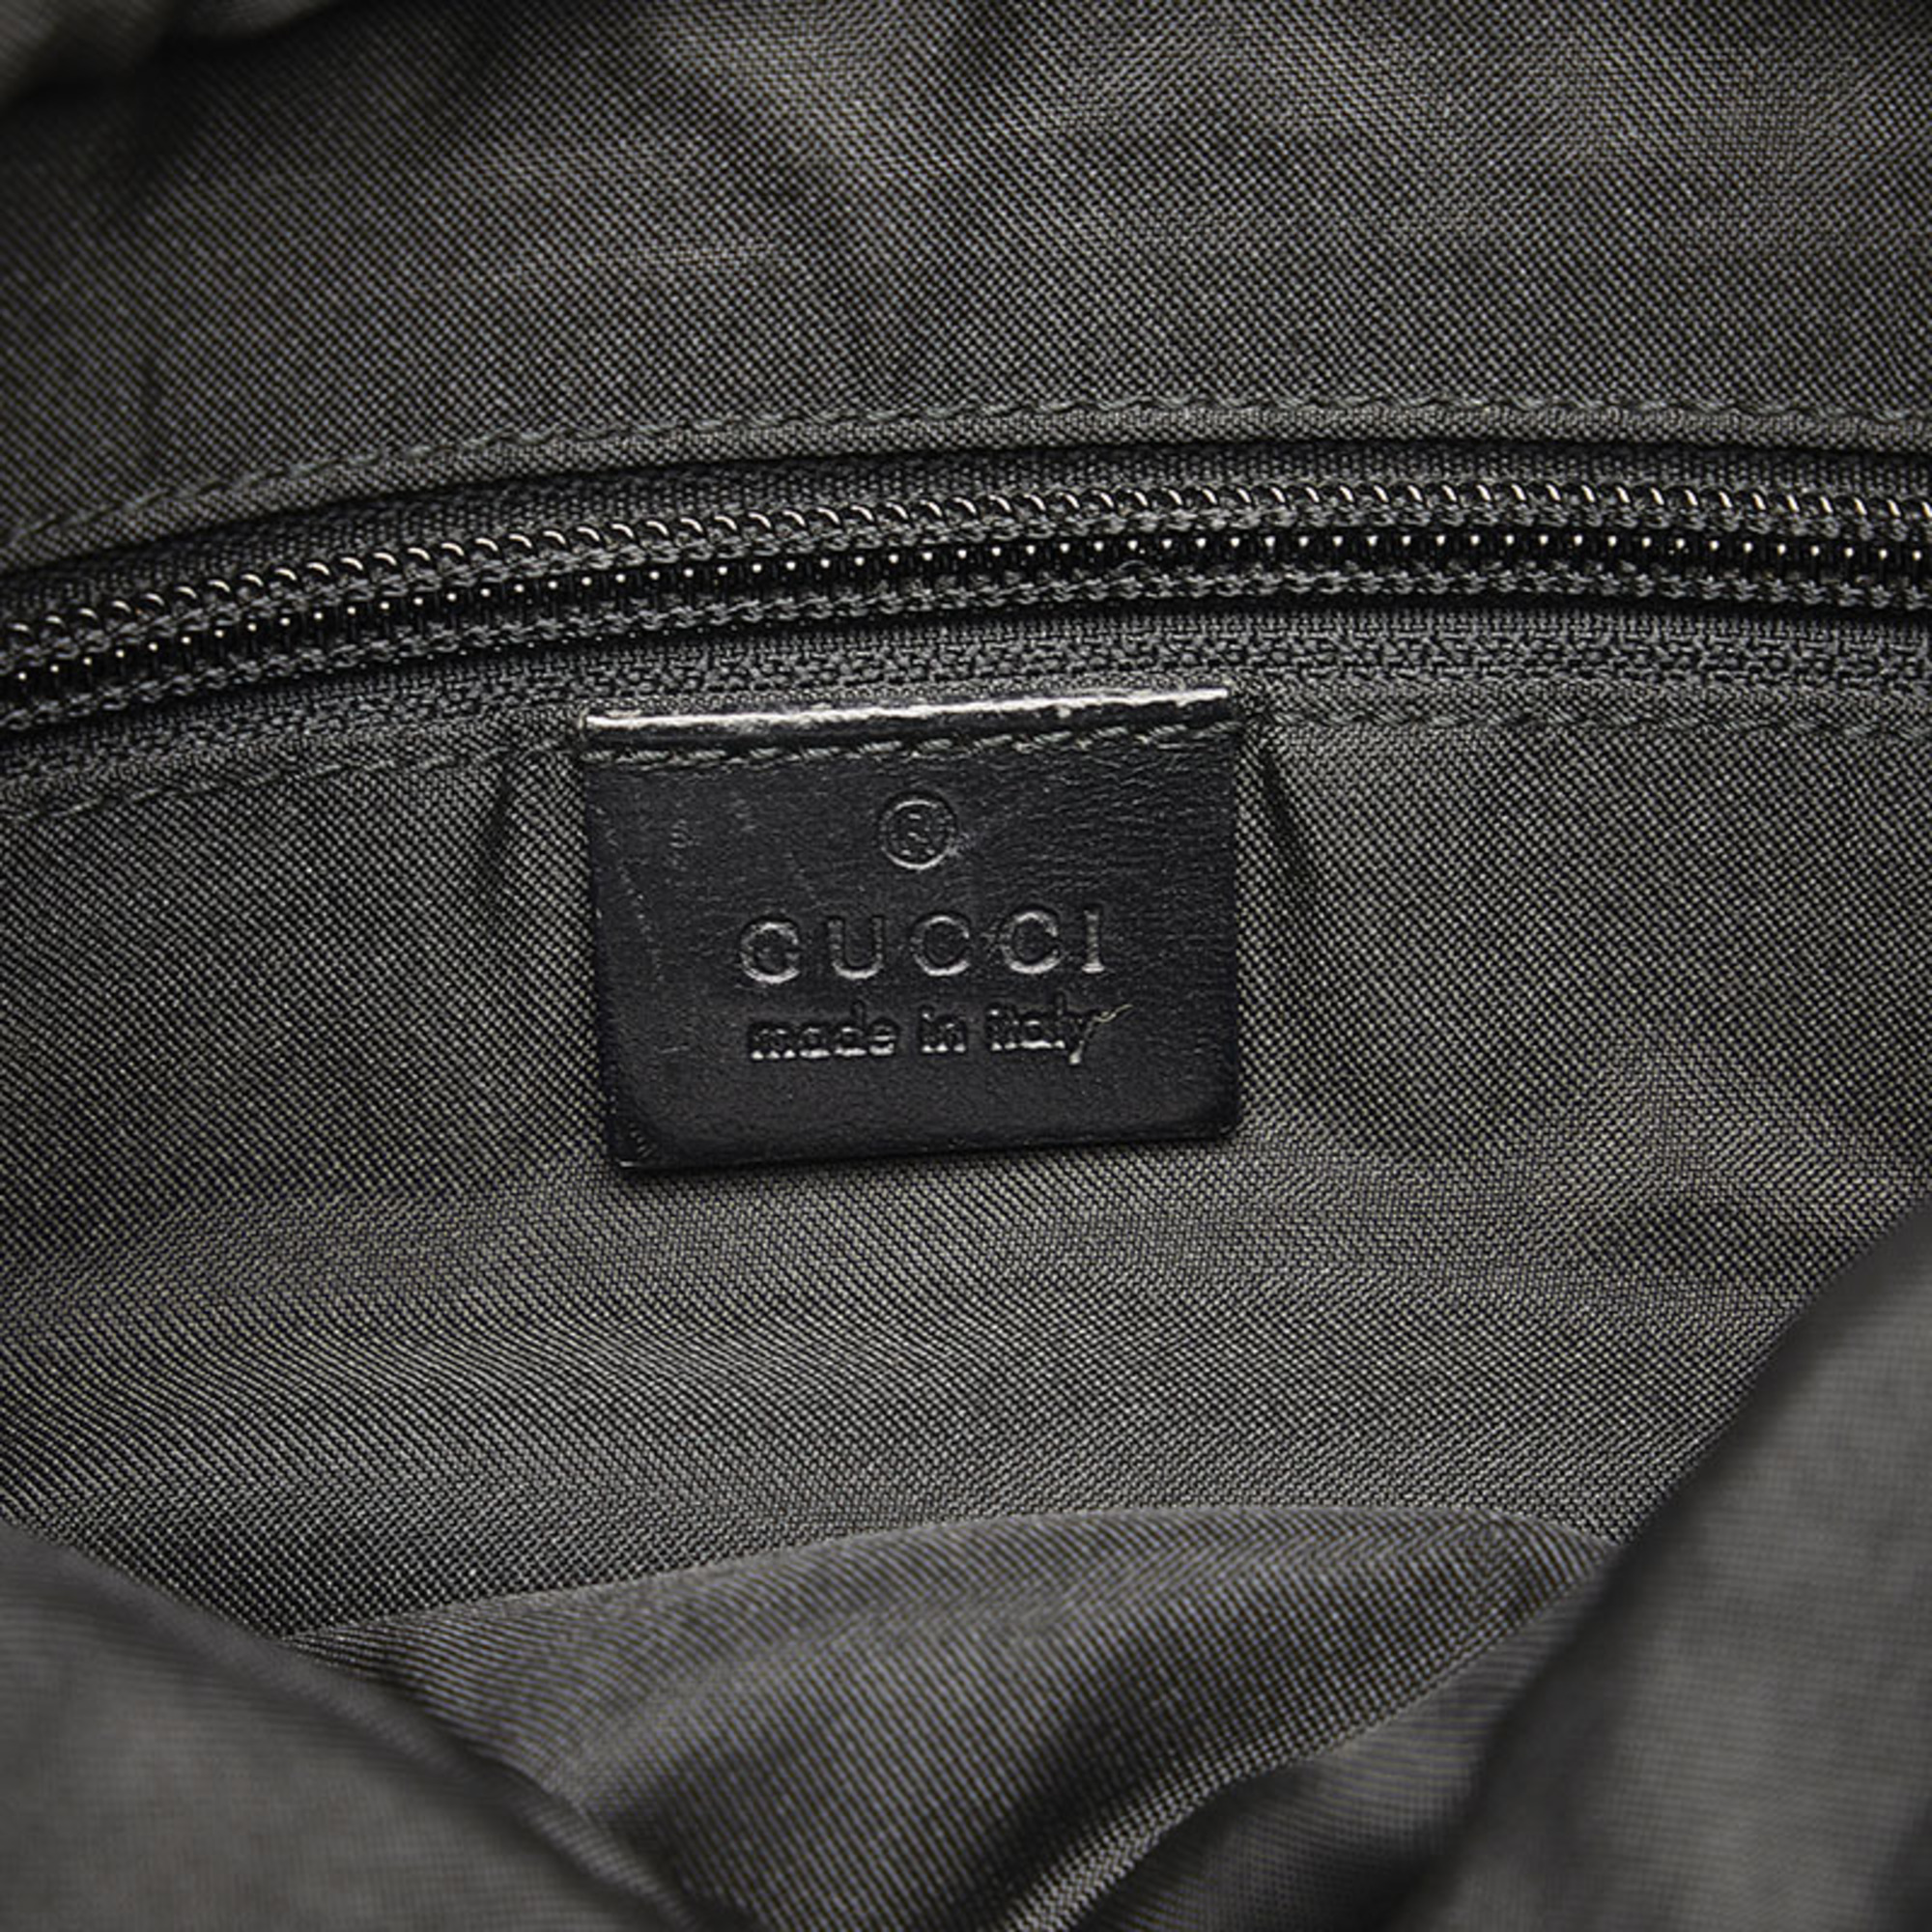 Gucci GG Canvas Tote Bag 0190402 Black Leather Women's GUCCI